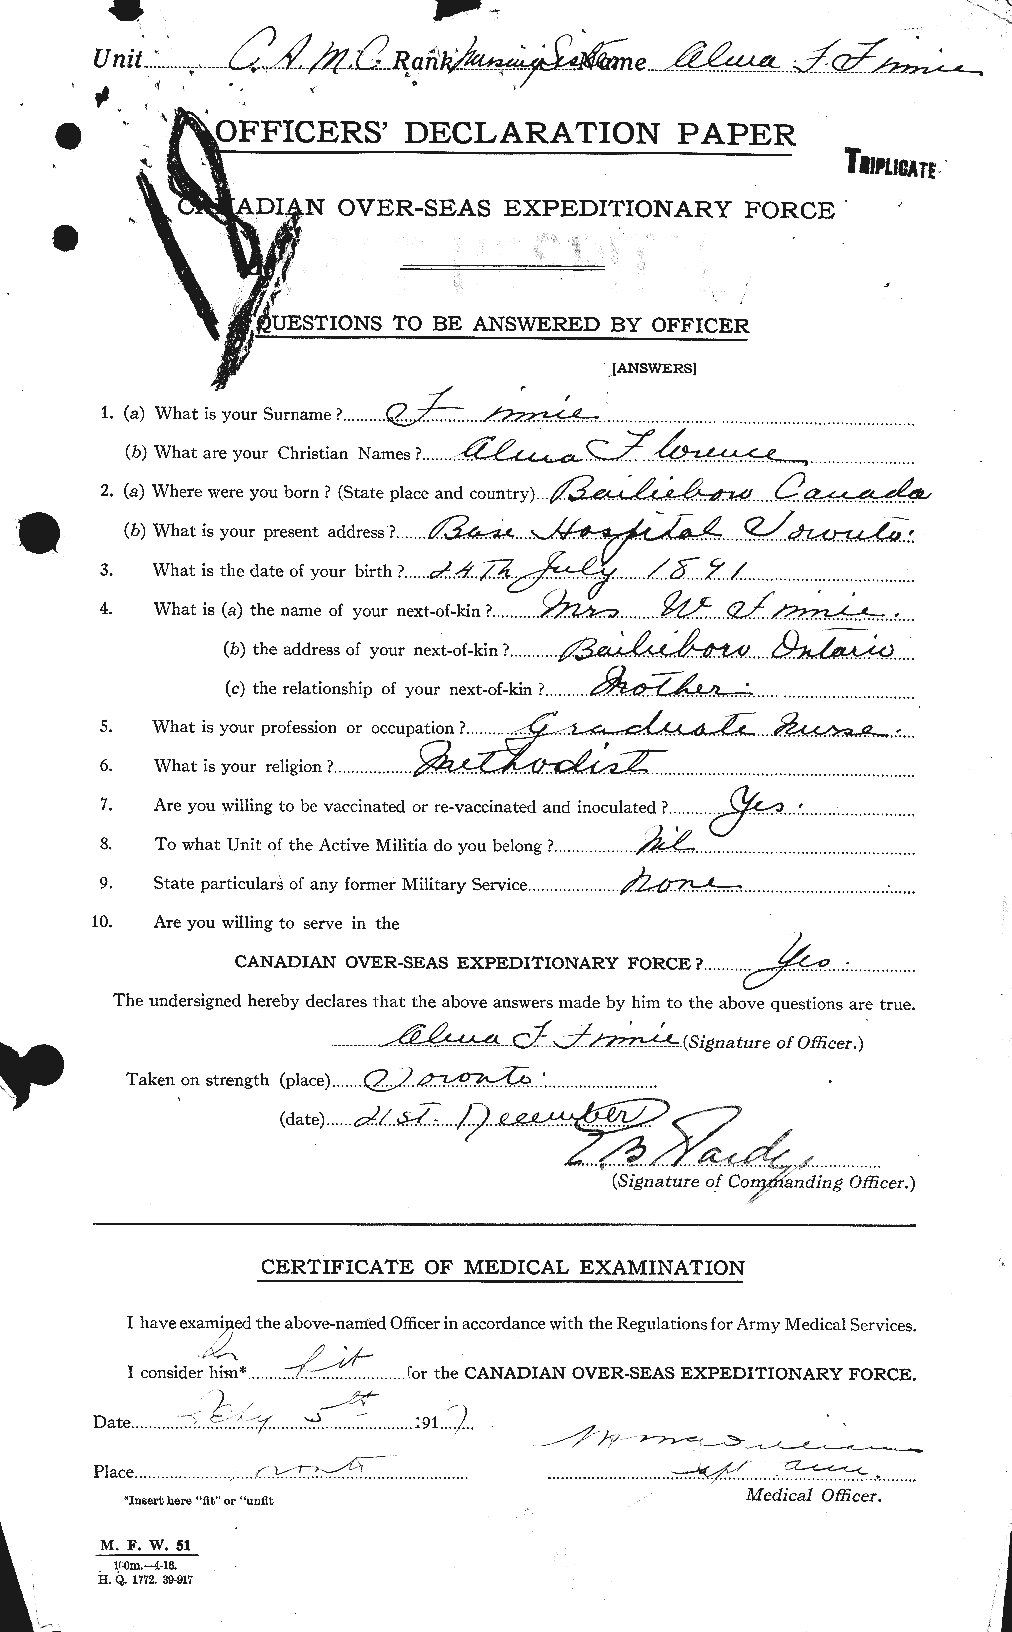 Dossiers du Personnel de la Première Guerre mondiale - CEC 328623a